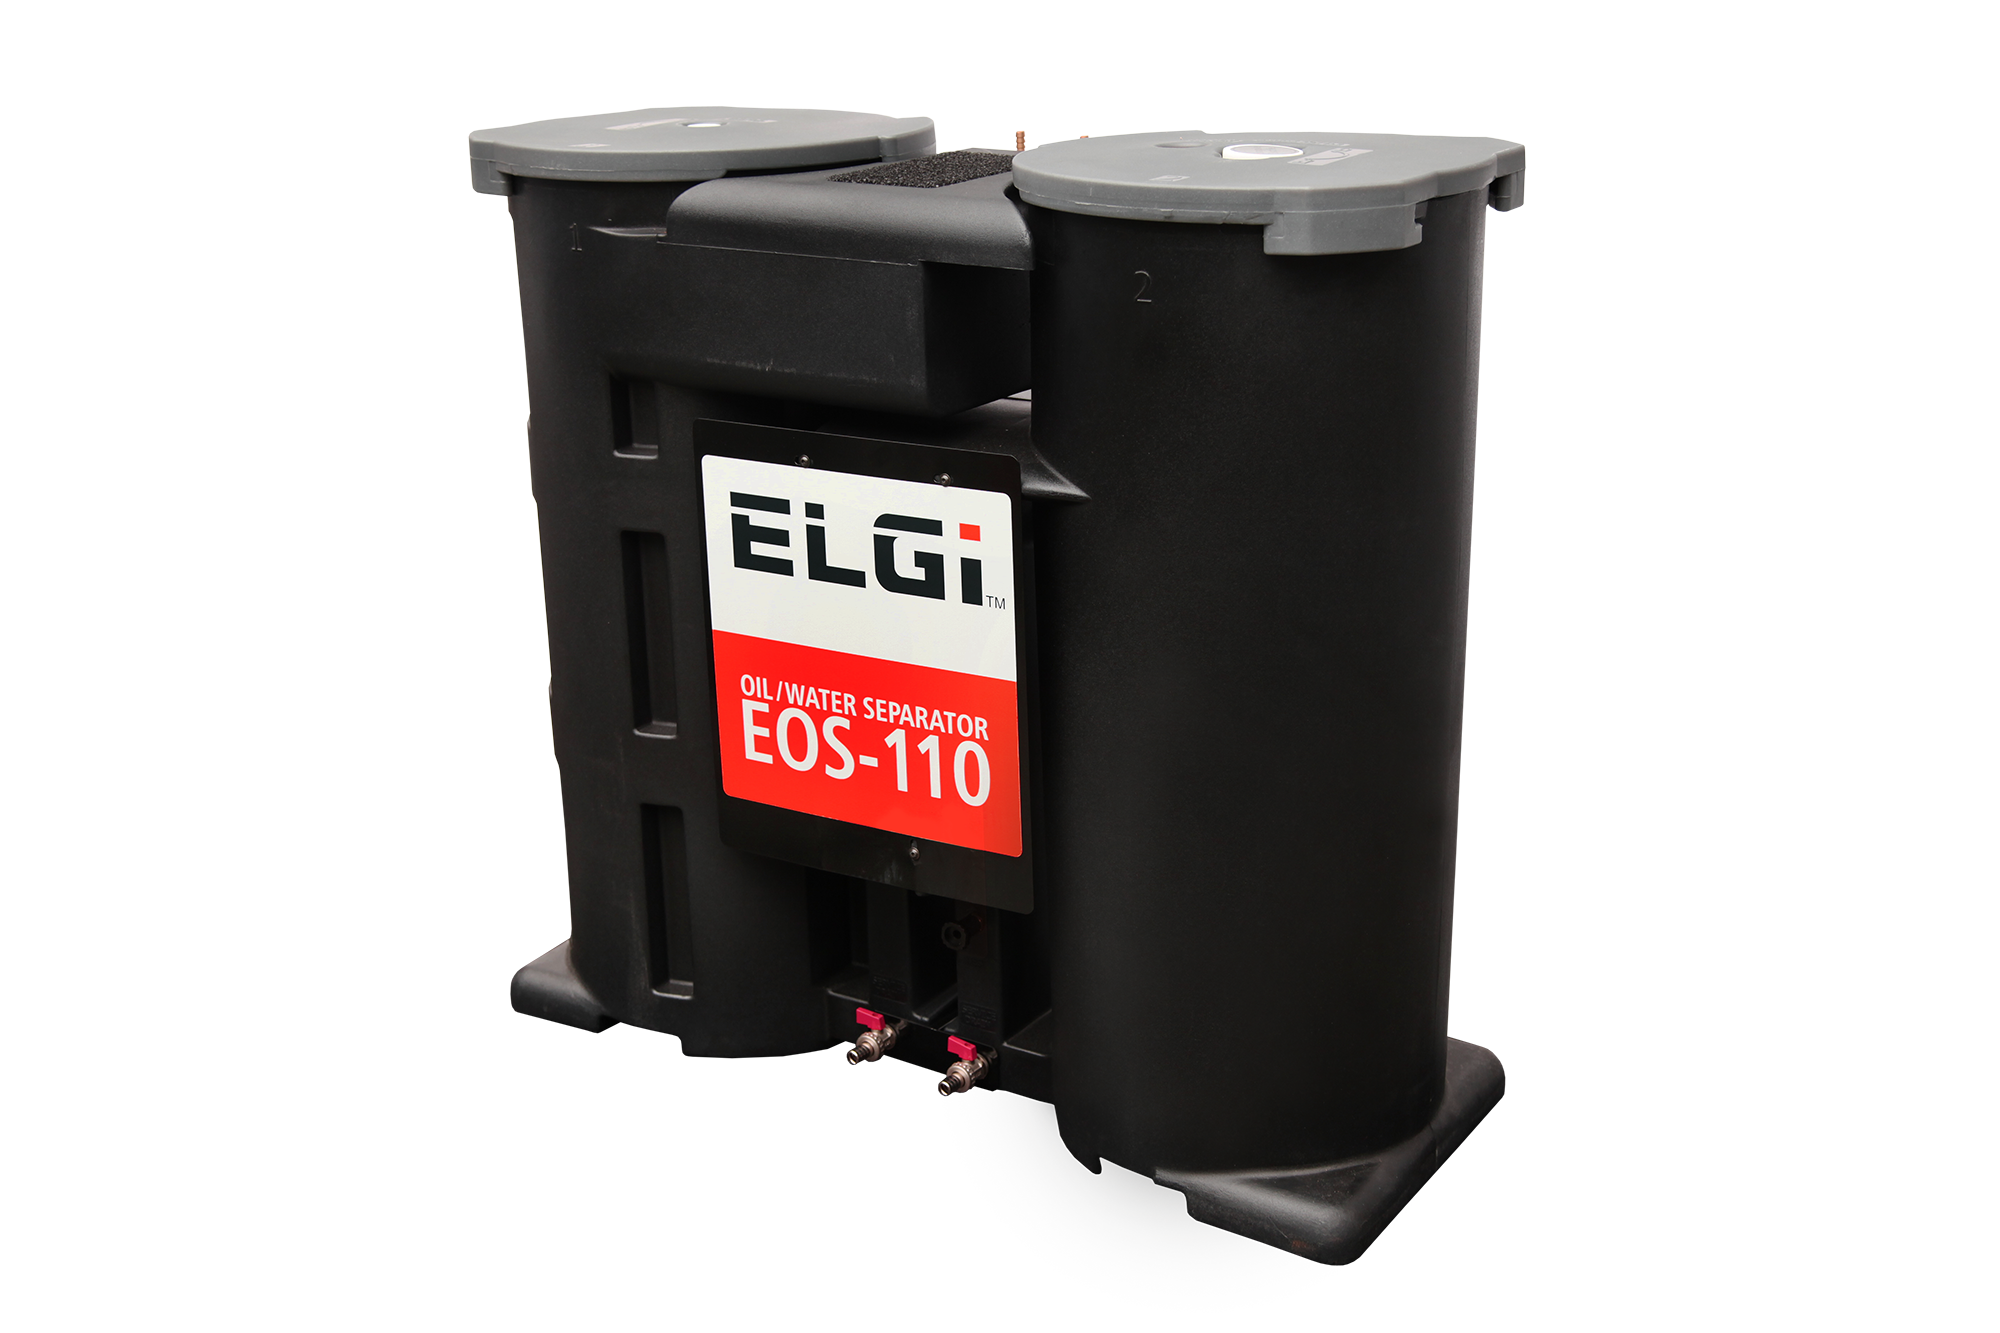 ELGi oil-water separator